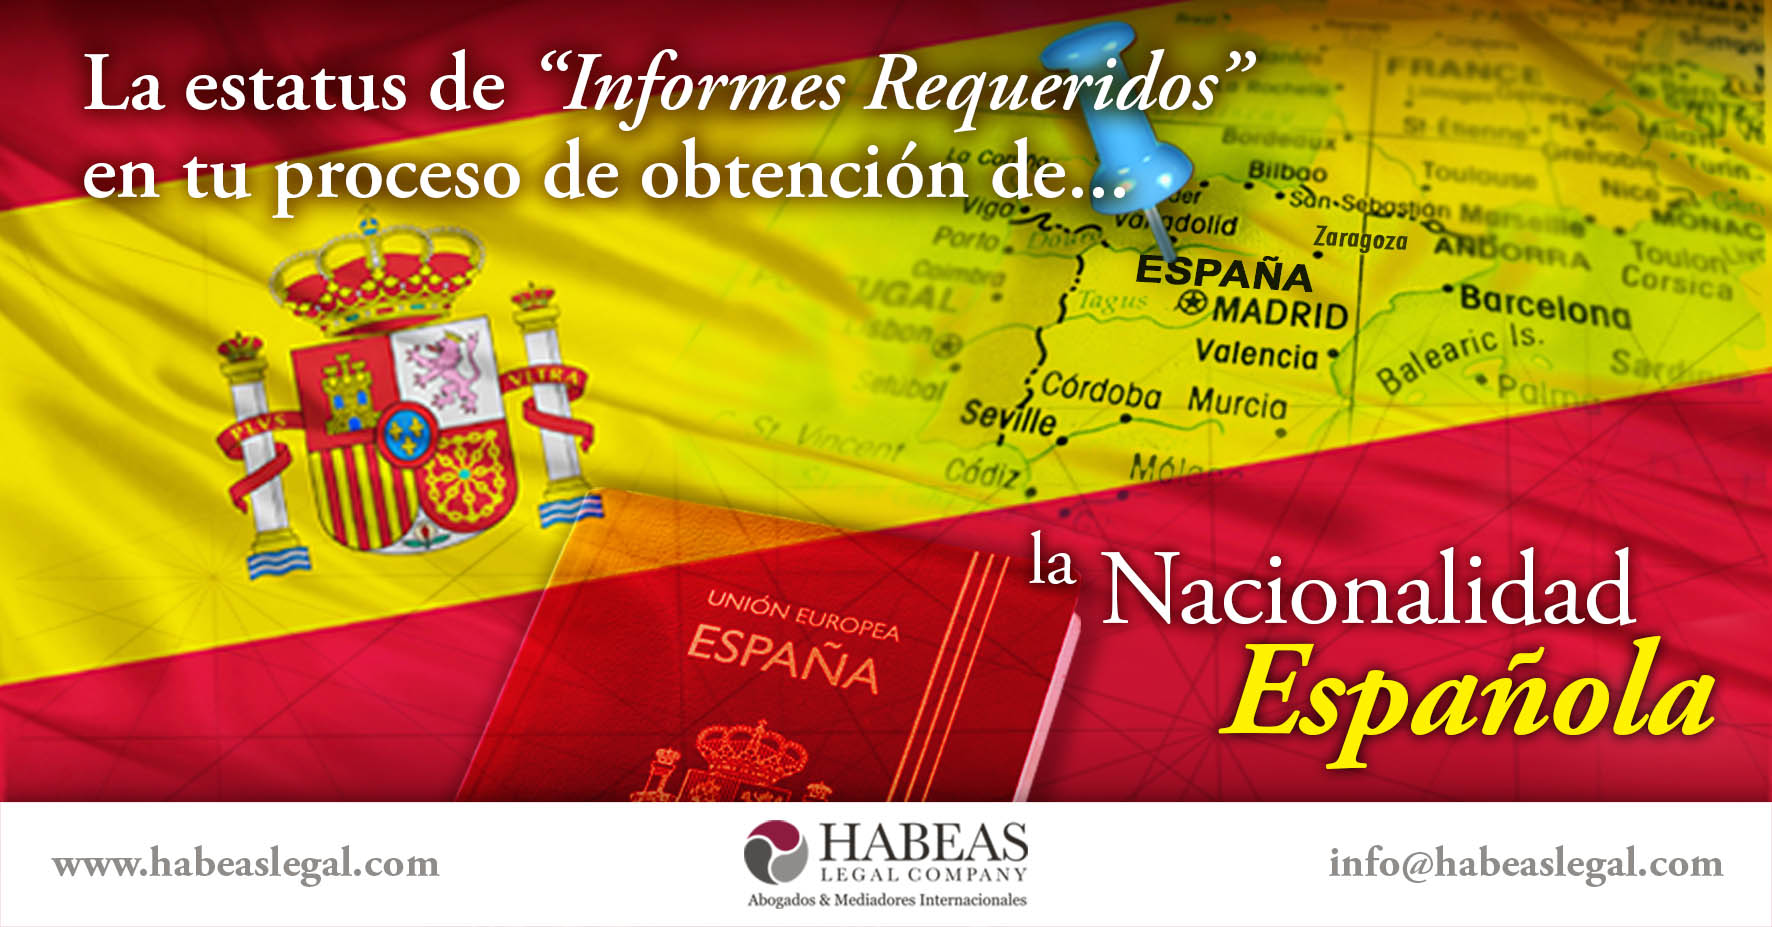 Nacionalidad española informes requeridos Habeas Legal - ¿Qué hacer cuando aparece "Informes Requeridos" en tu proceso de Nacionalidad Española?